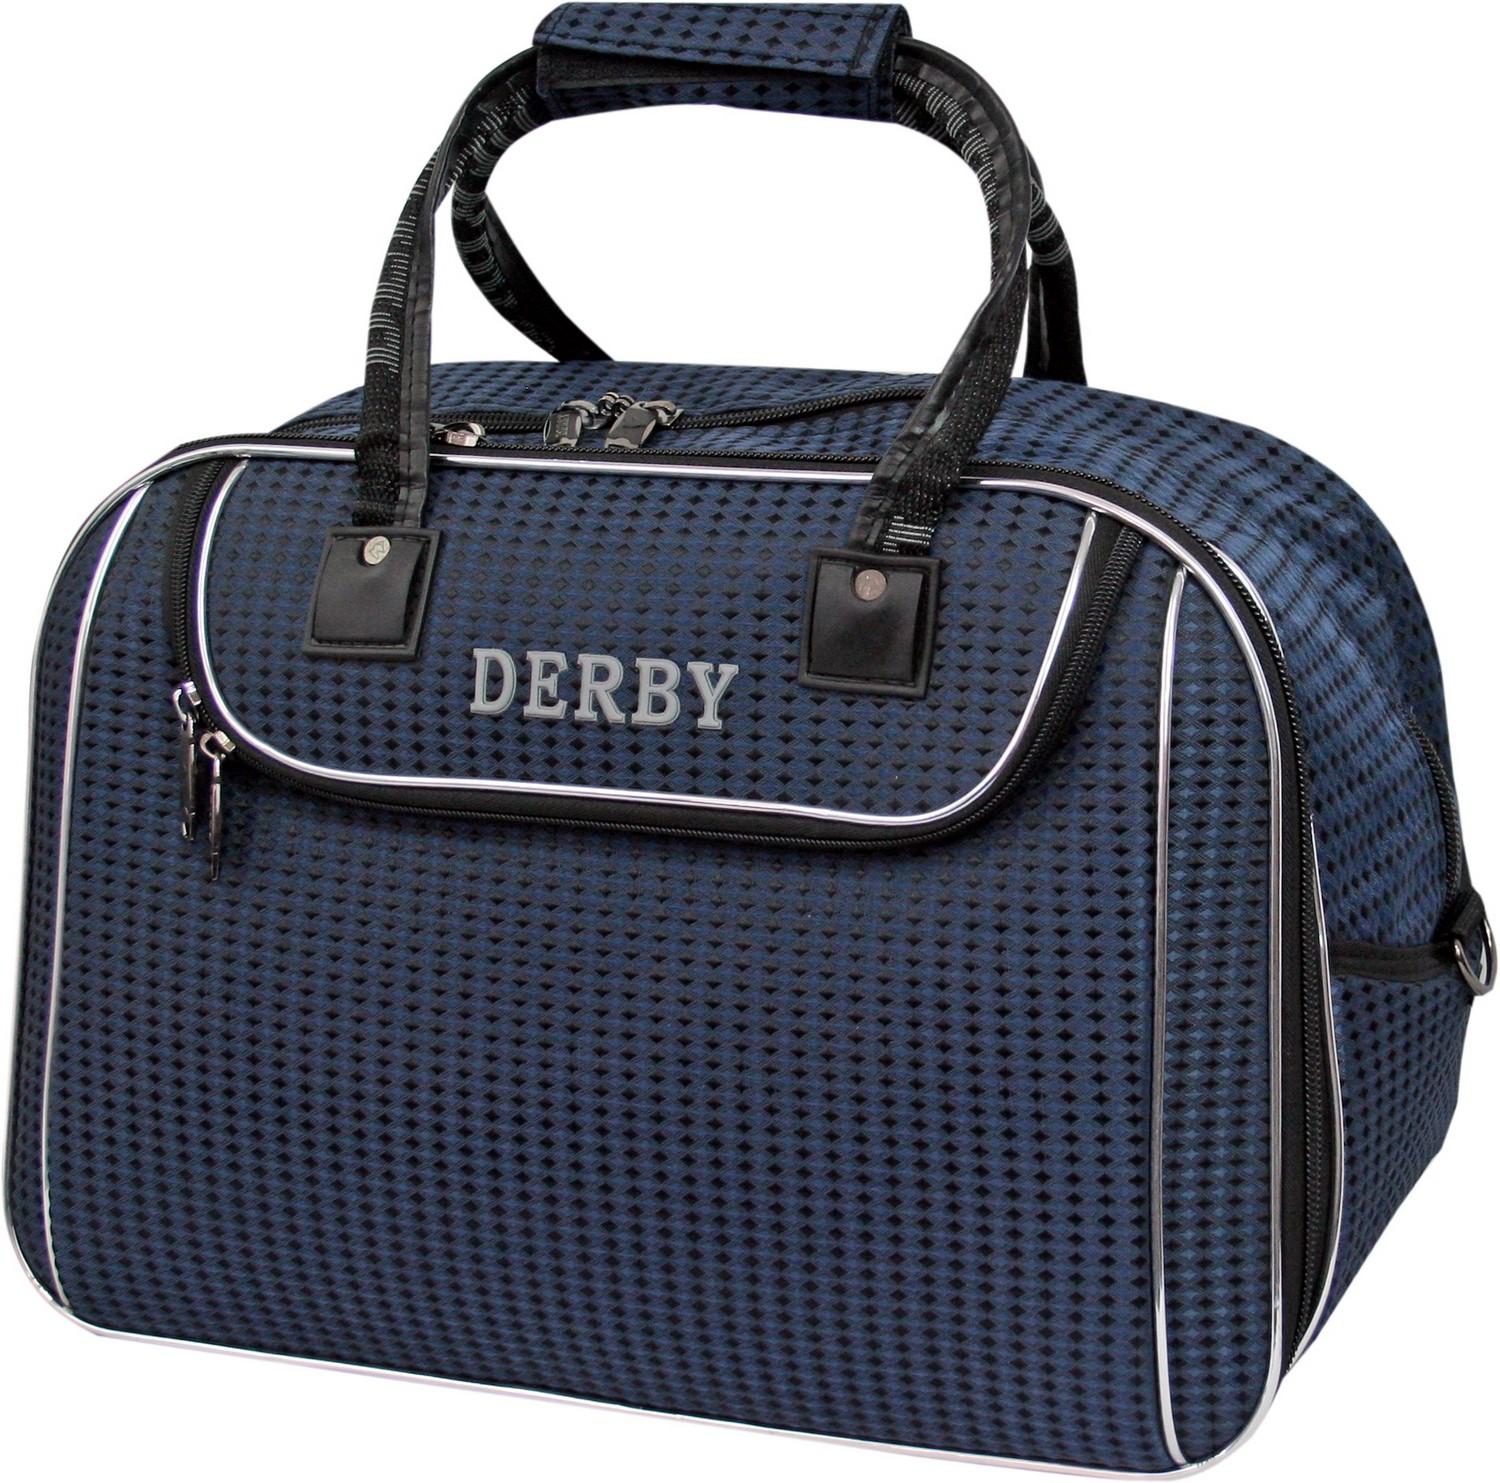 Компанія Derby спеціалізується в основному на виробництві дорожньо-спортивних сумок і валіз